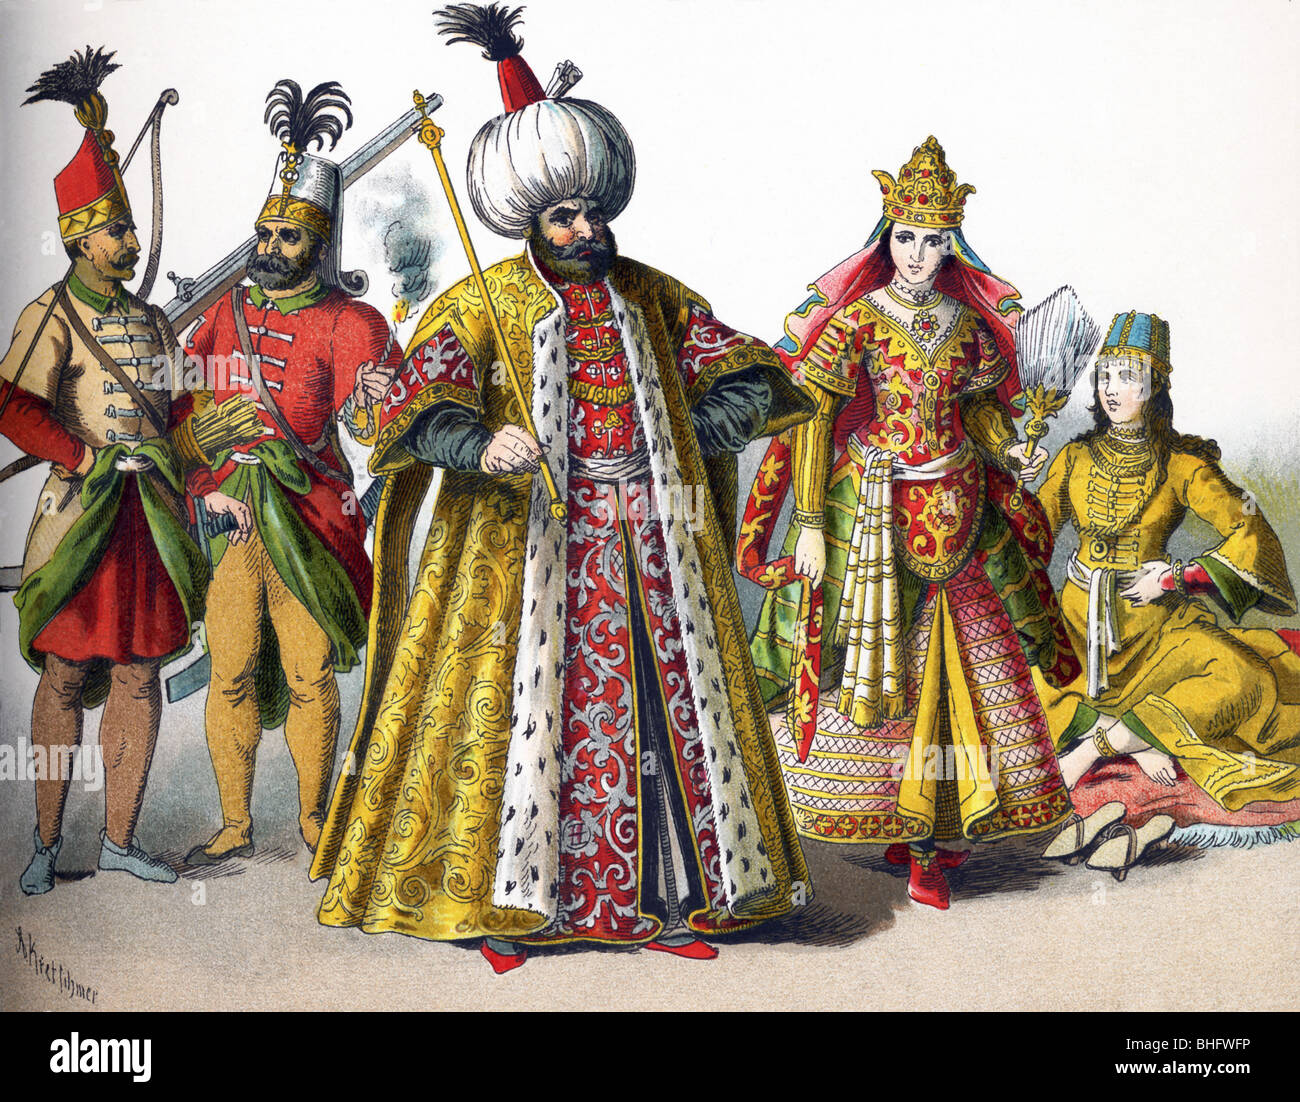 Questi Impero ottomano figure nel 1500 rappresentano una guardia, un Janizary (Janissary), un Sultano, uva sultanina, e una donna di rango. Foto Stock